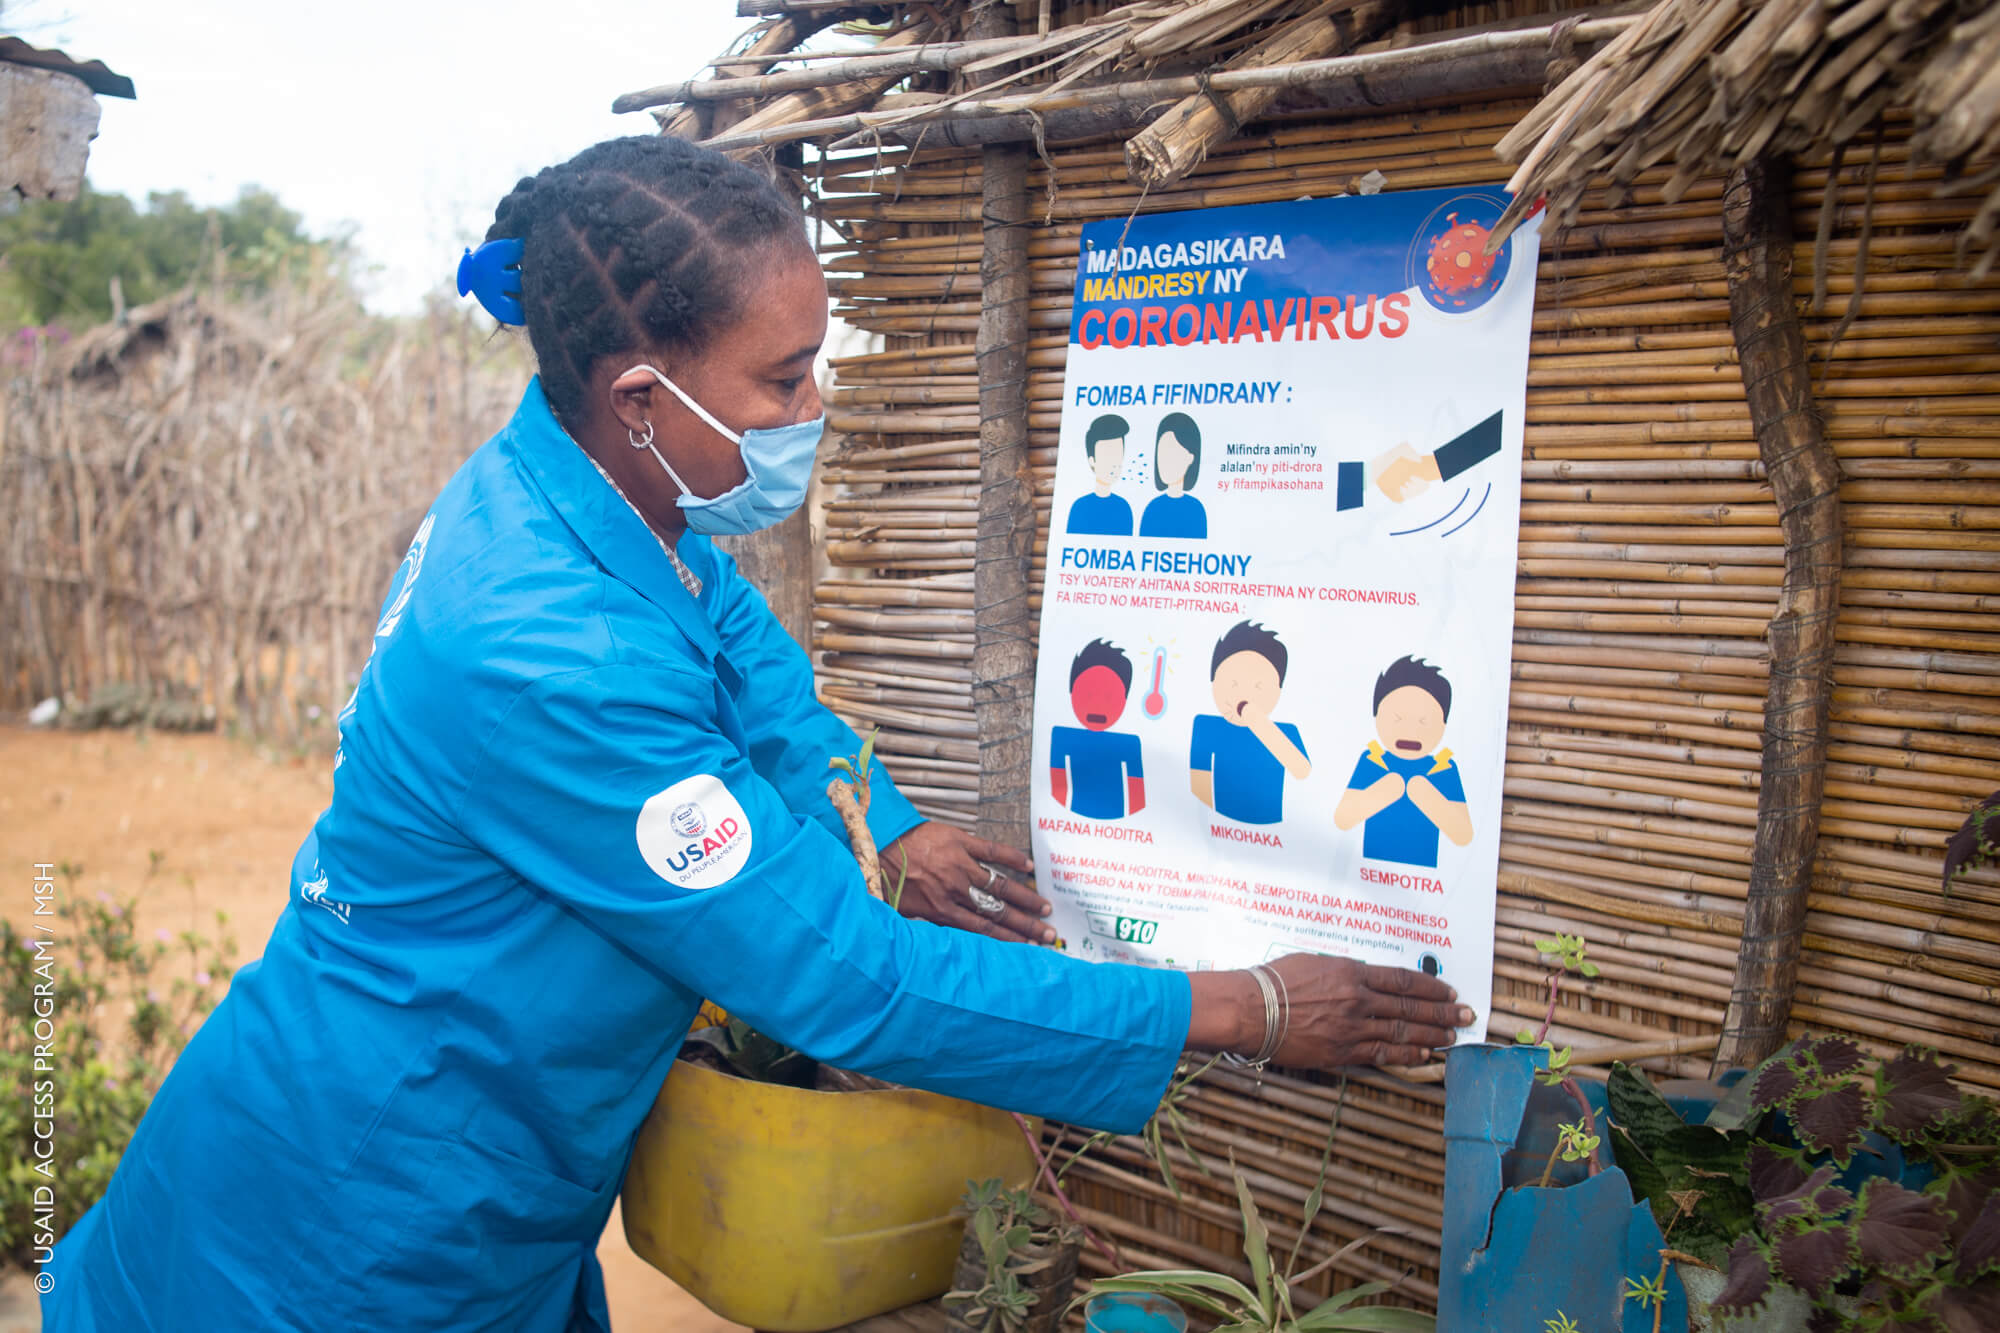 O Agente de Saúde Comunitário em Madagascar exibe pôster educacional sobre a prevenção COVID-19.